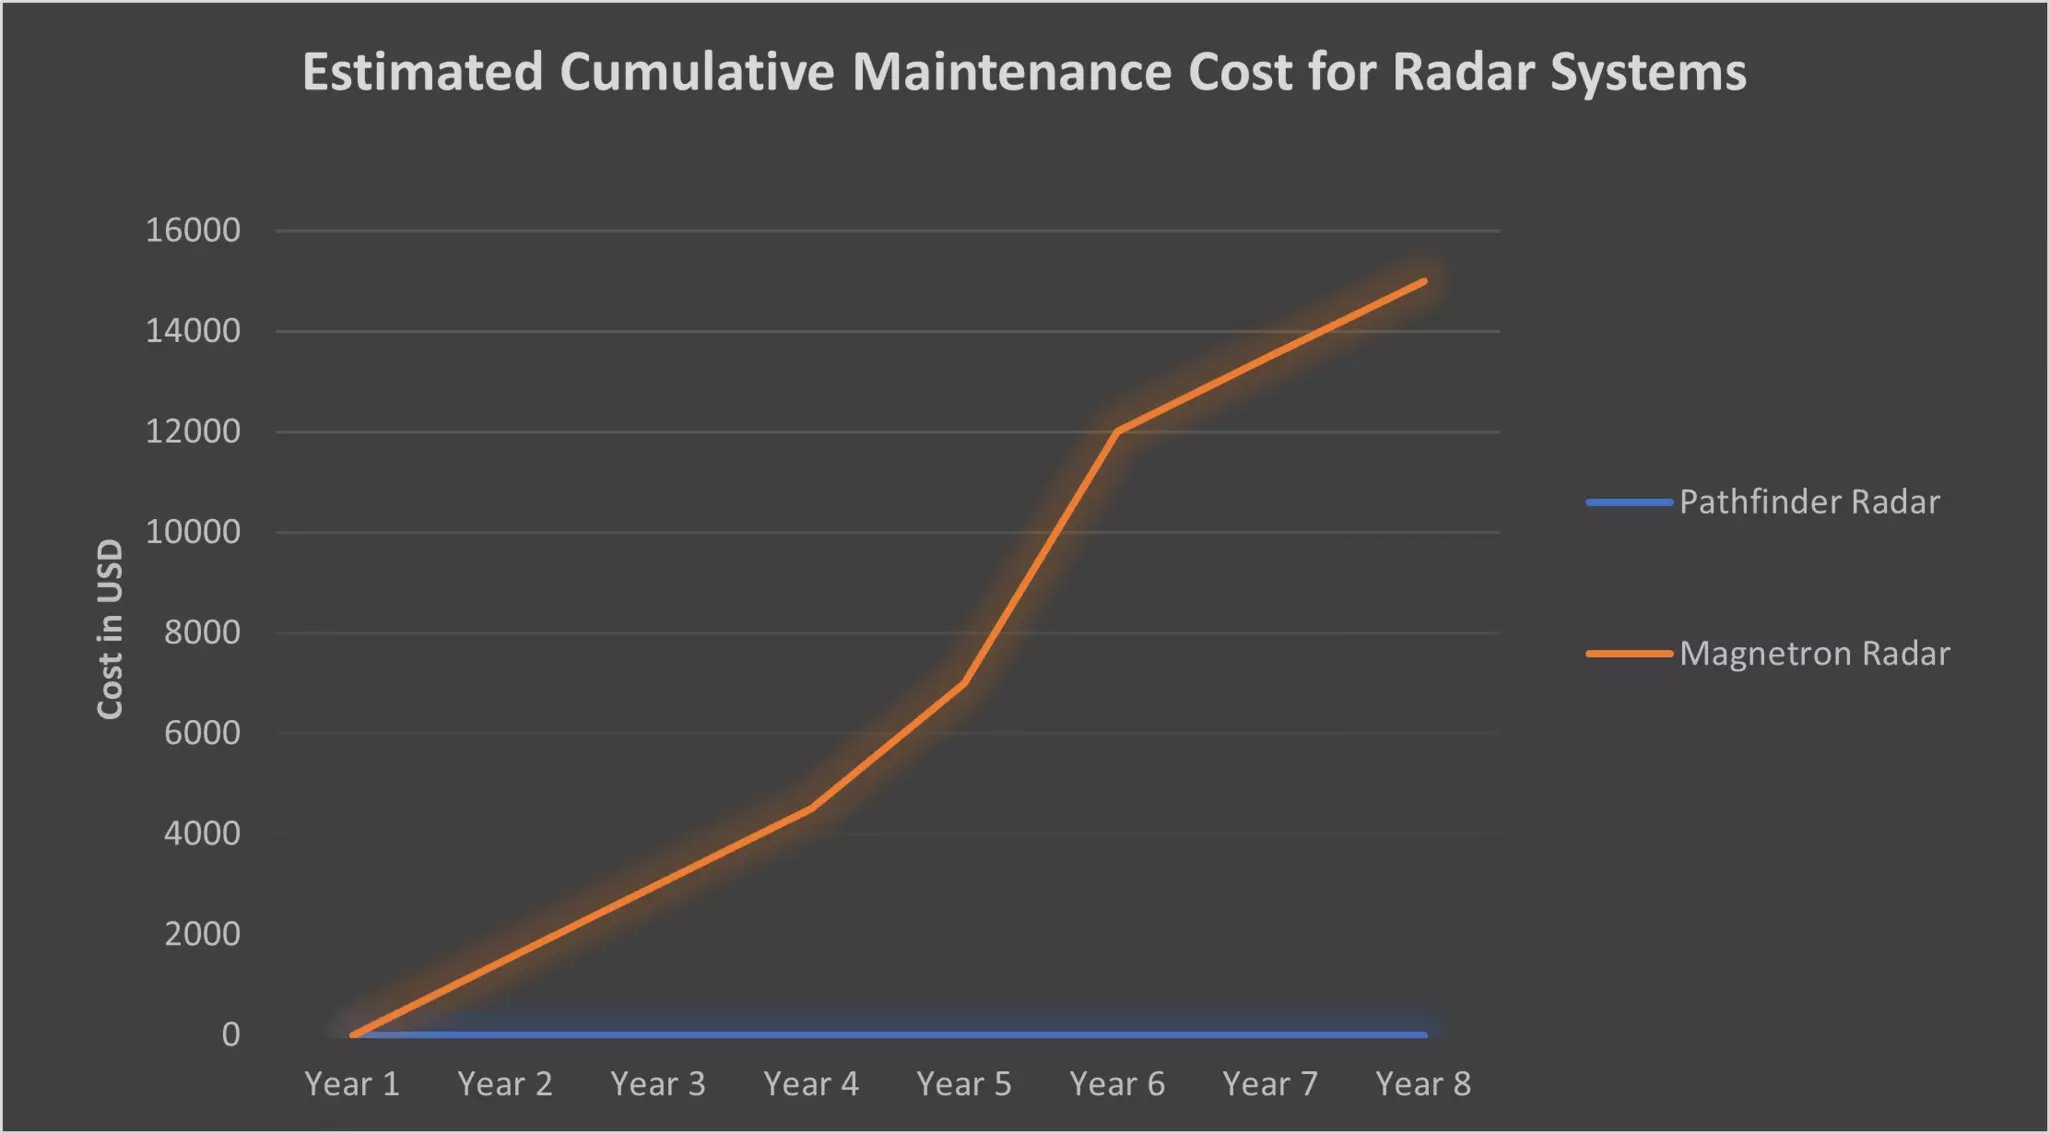 Costes de mantenimiento del radar Pathfinder frente al de magnetrón